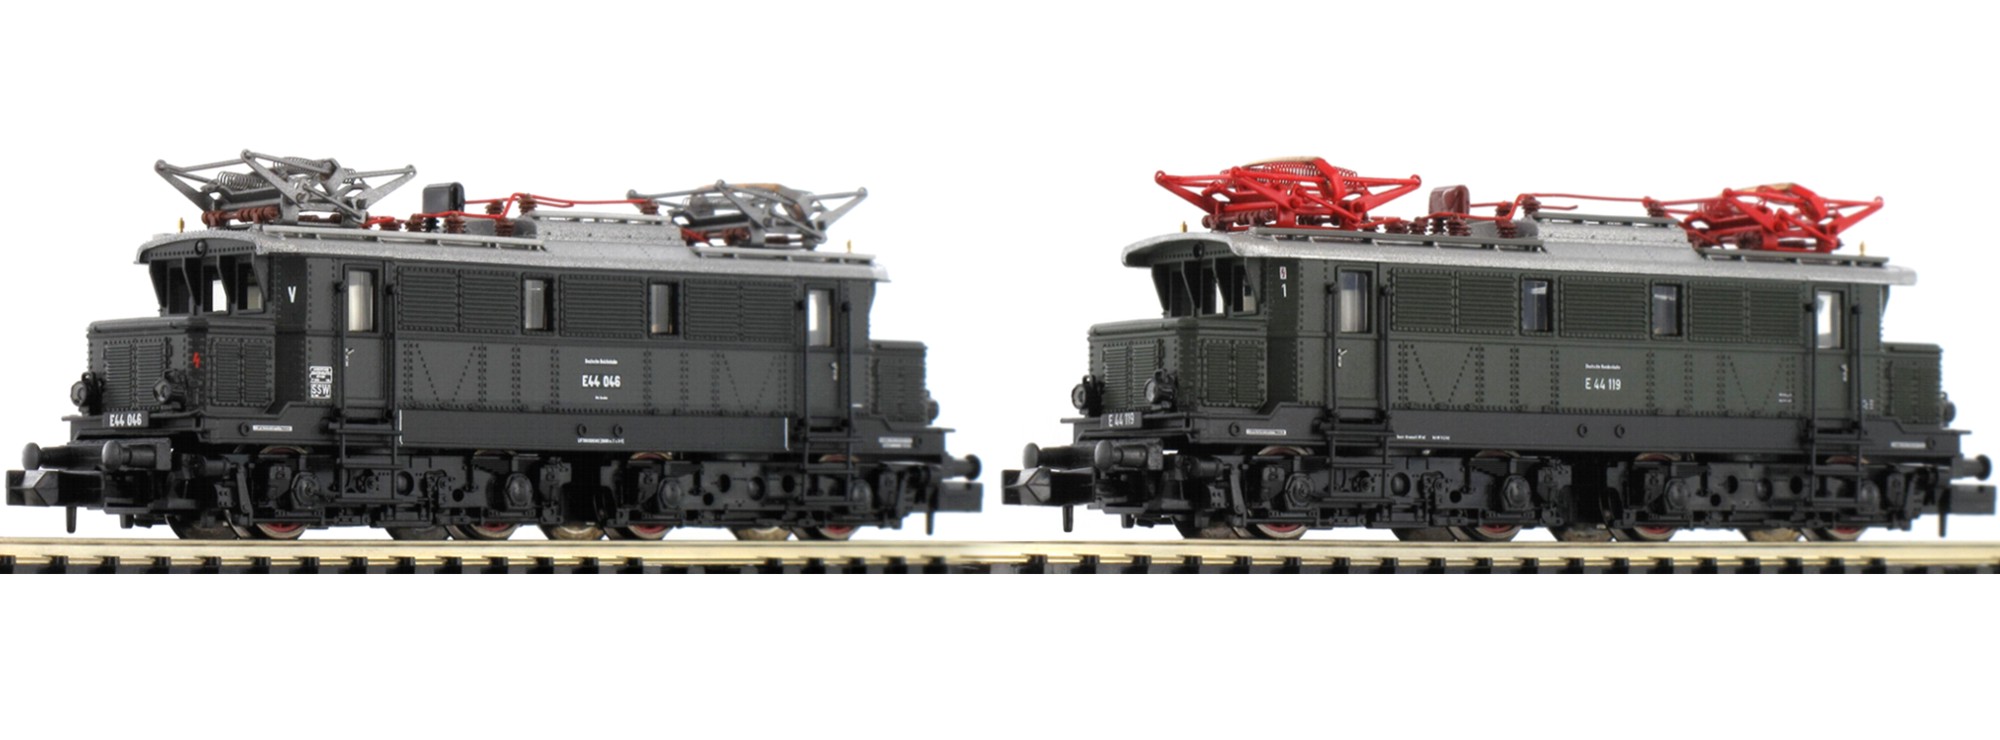 N Scale - Minitrix - 16661 - Locomotive, Electric, E44 - Deutsche Reichsbahn - 2-Pack